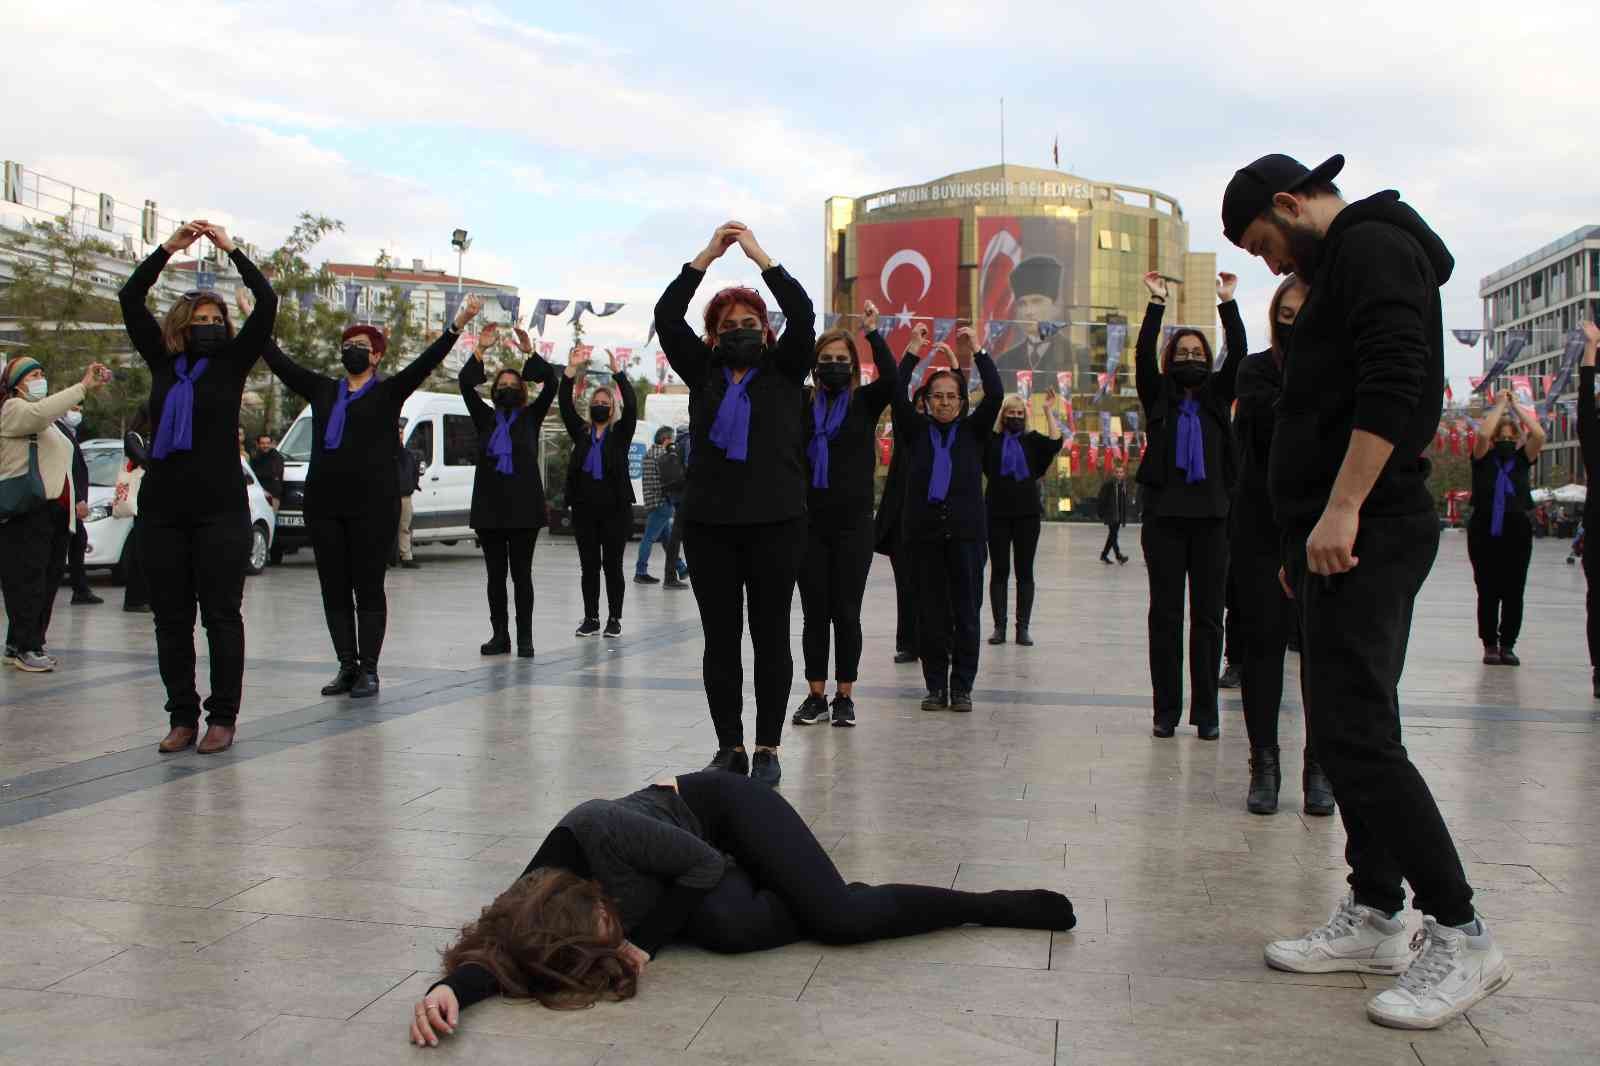 Aydın’da kadınlar şiddete karşı dans etti #aydin